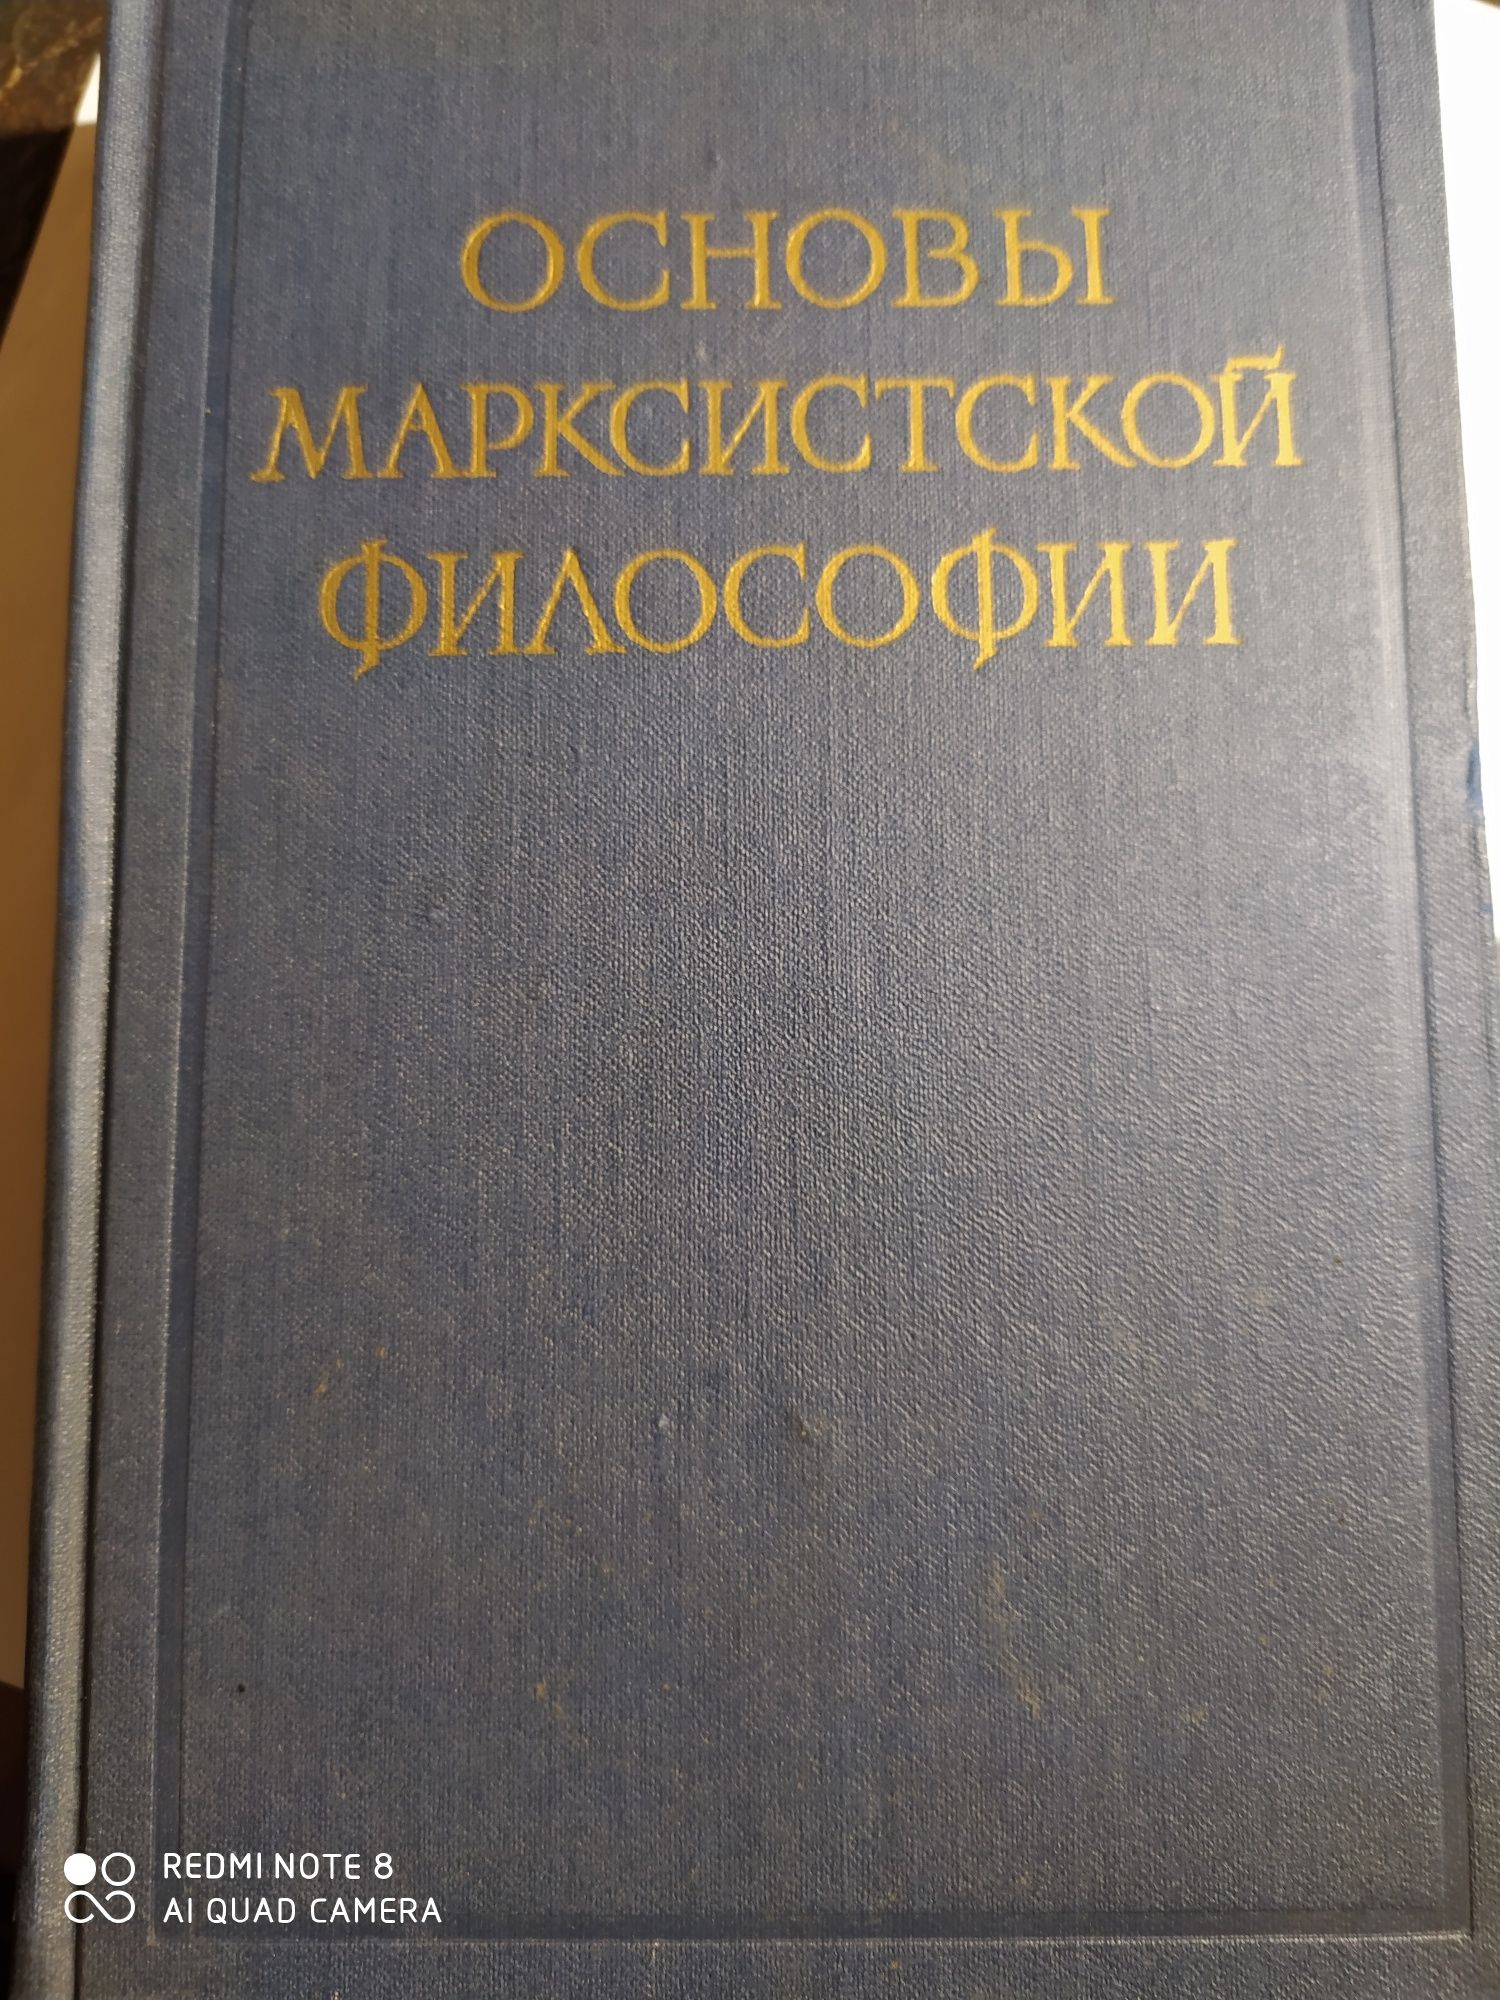 Книга Академии наук СССР 1958г